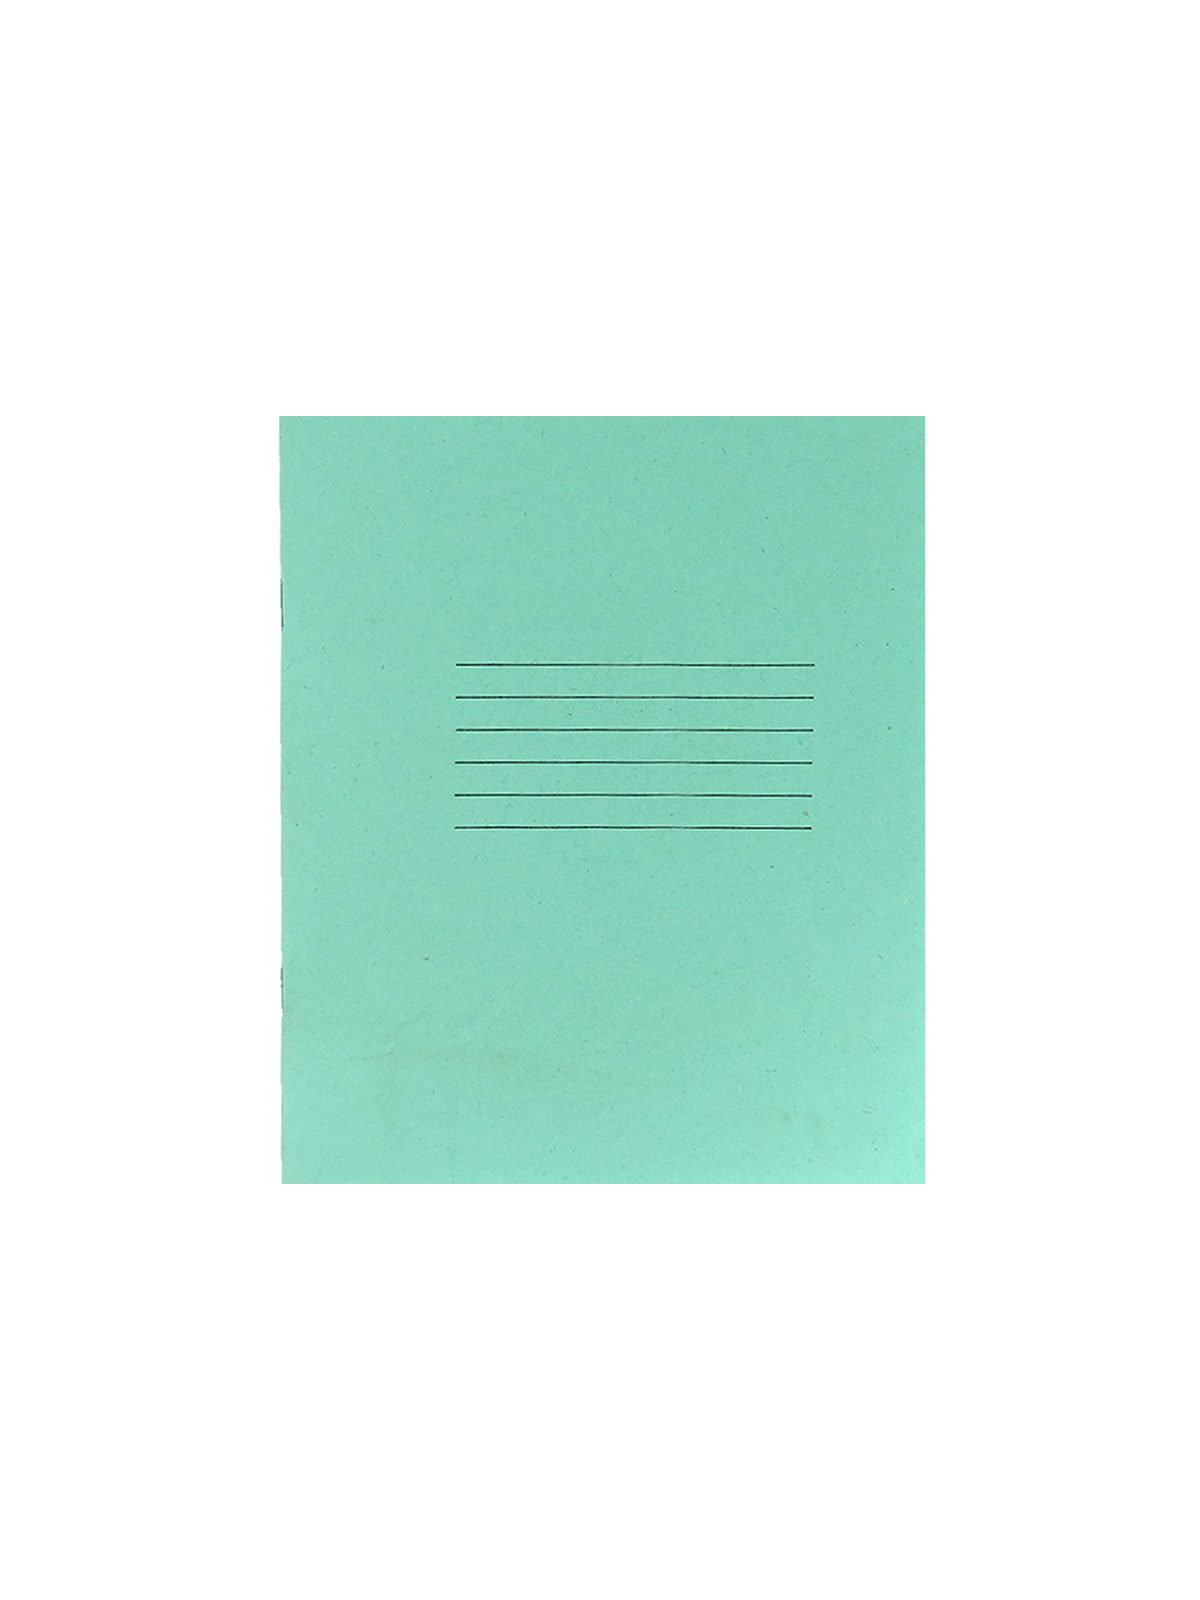 Брошюра зеленая обл 12л линия (12-4315), офсет